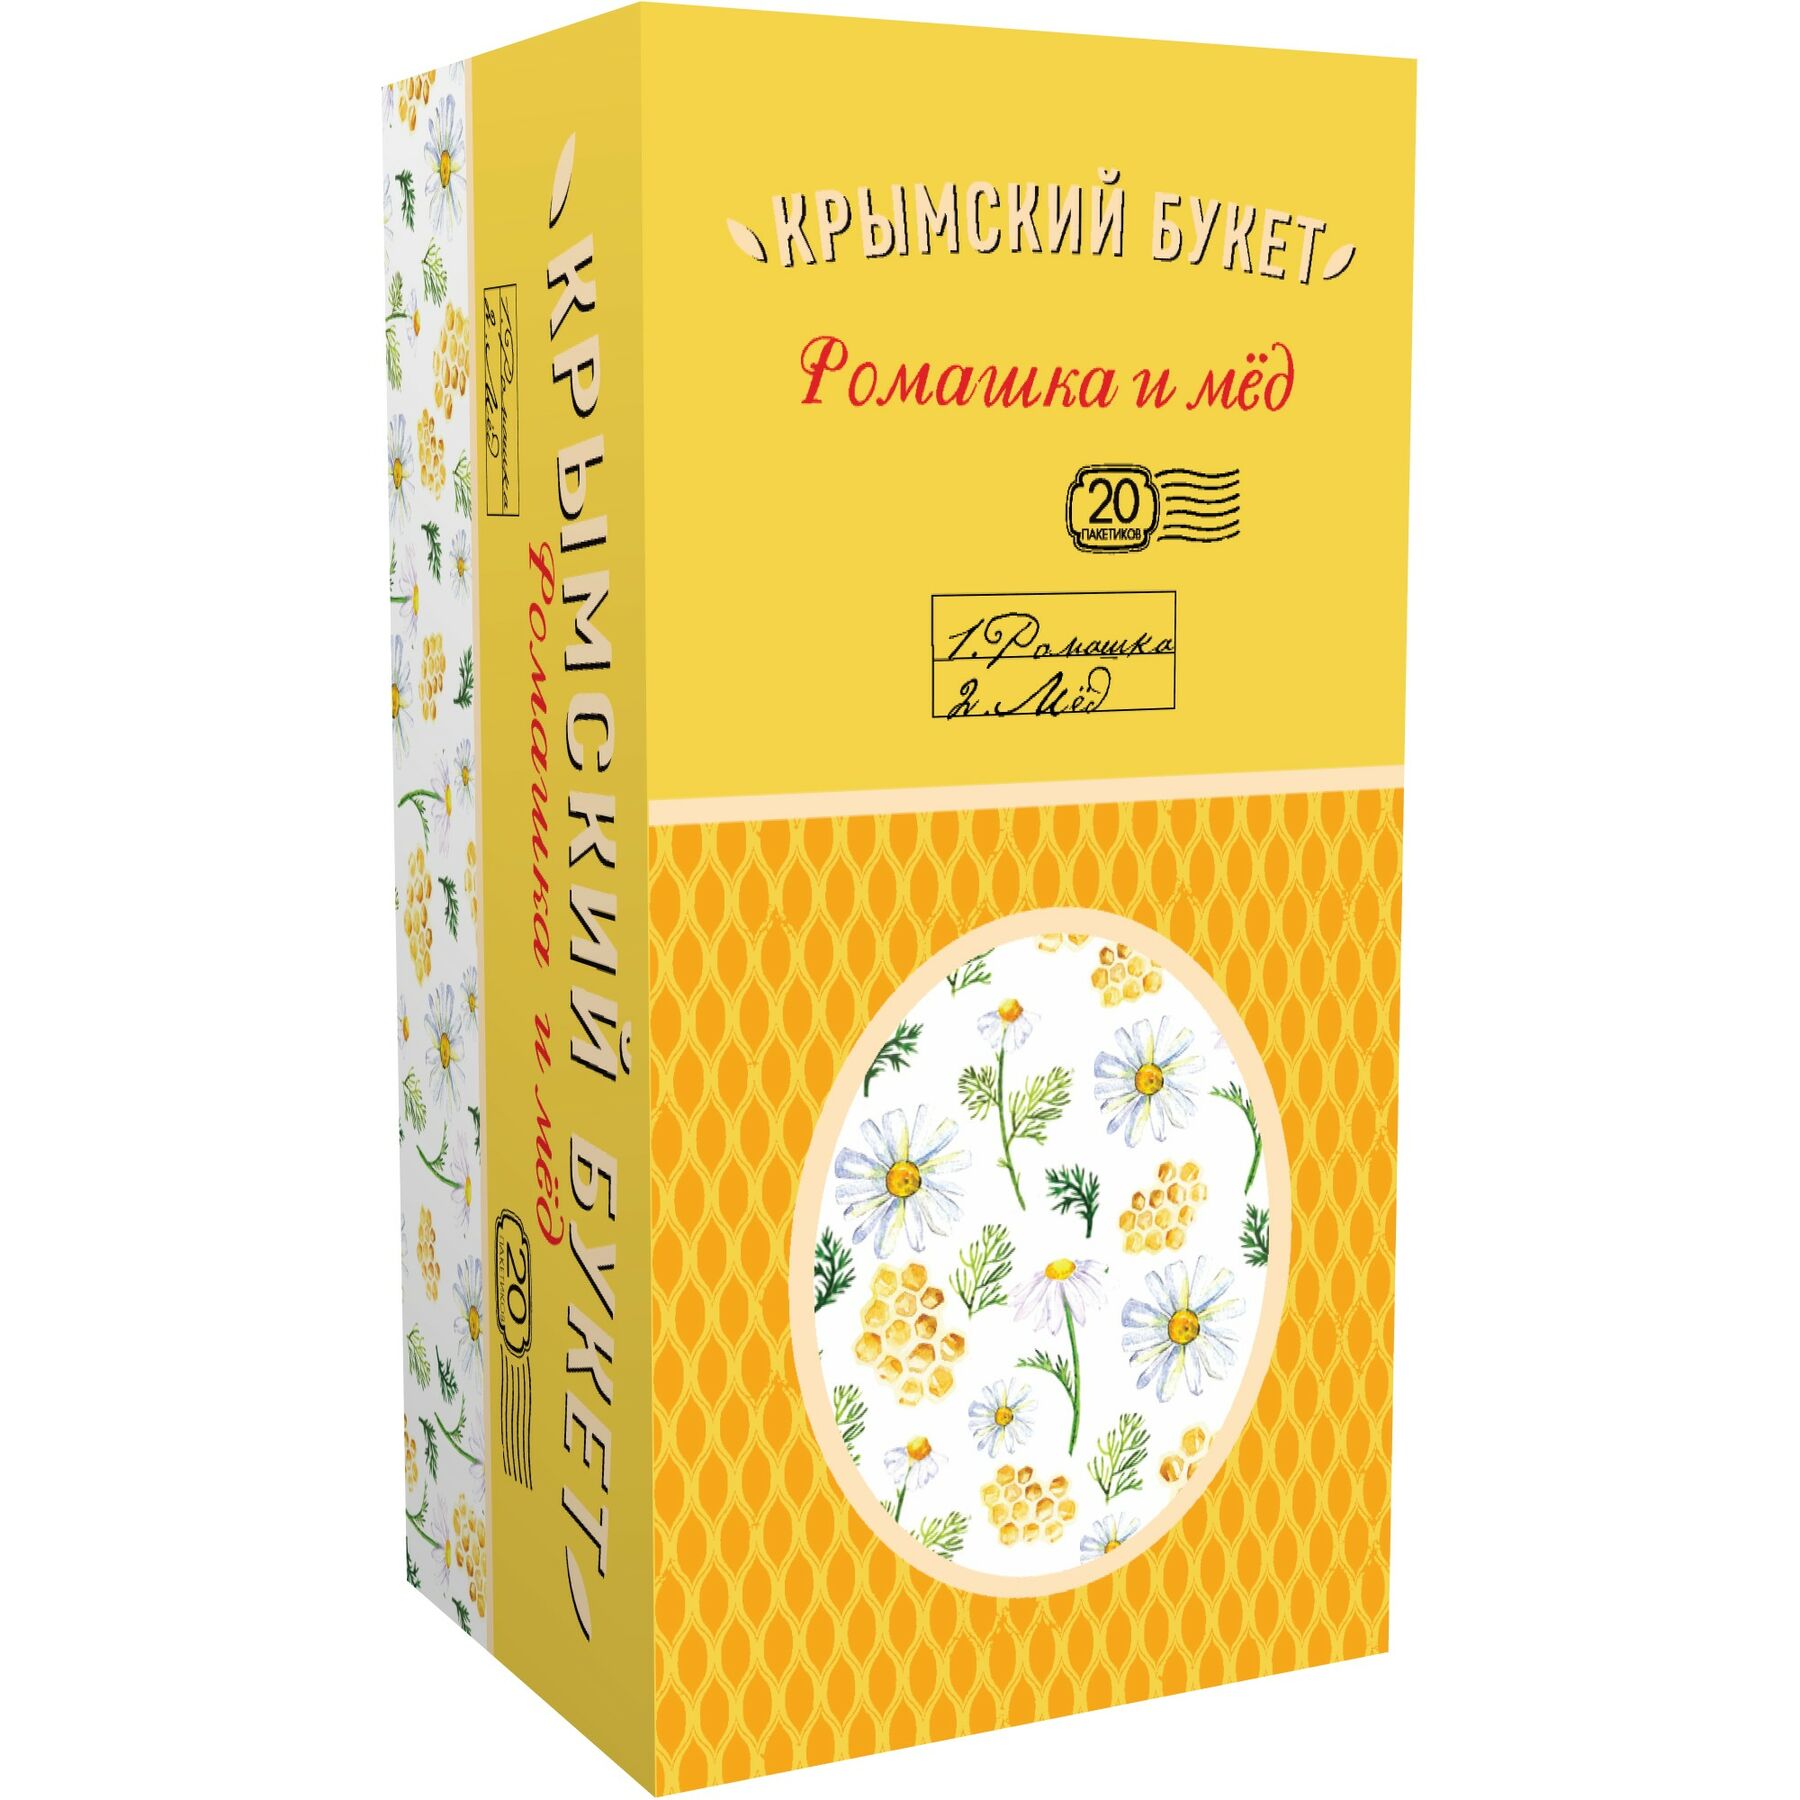 Чайный напиток "Крымский букет" Ромашка и мед, 20 пакетиков, 30 гр.